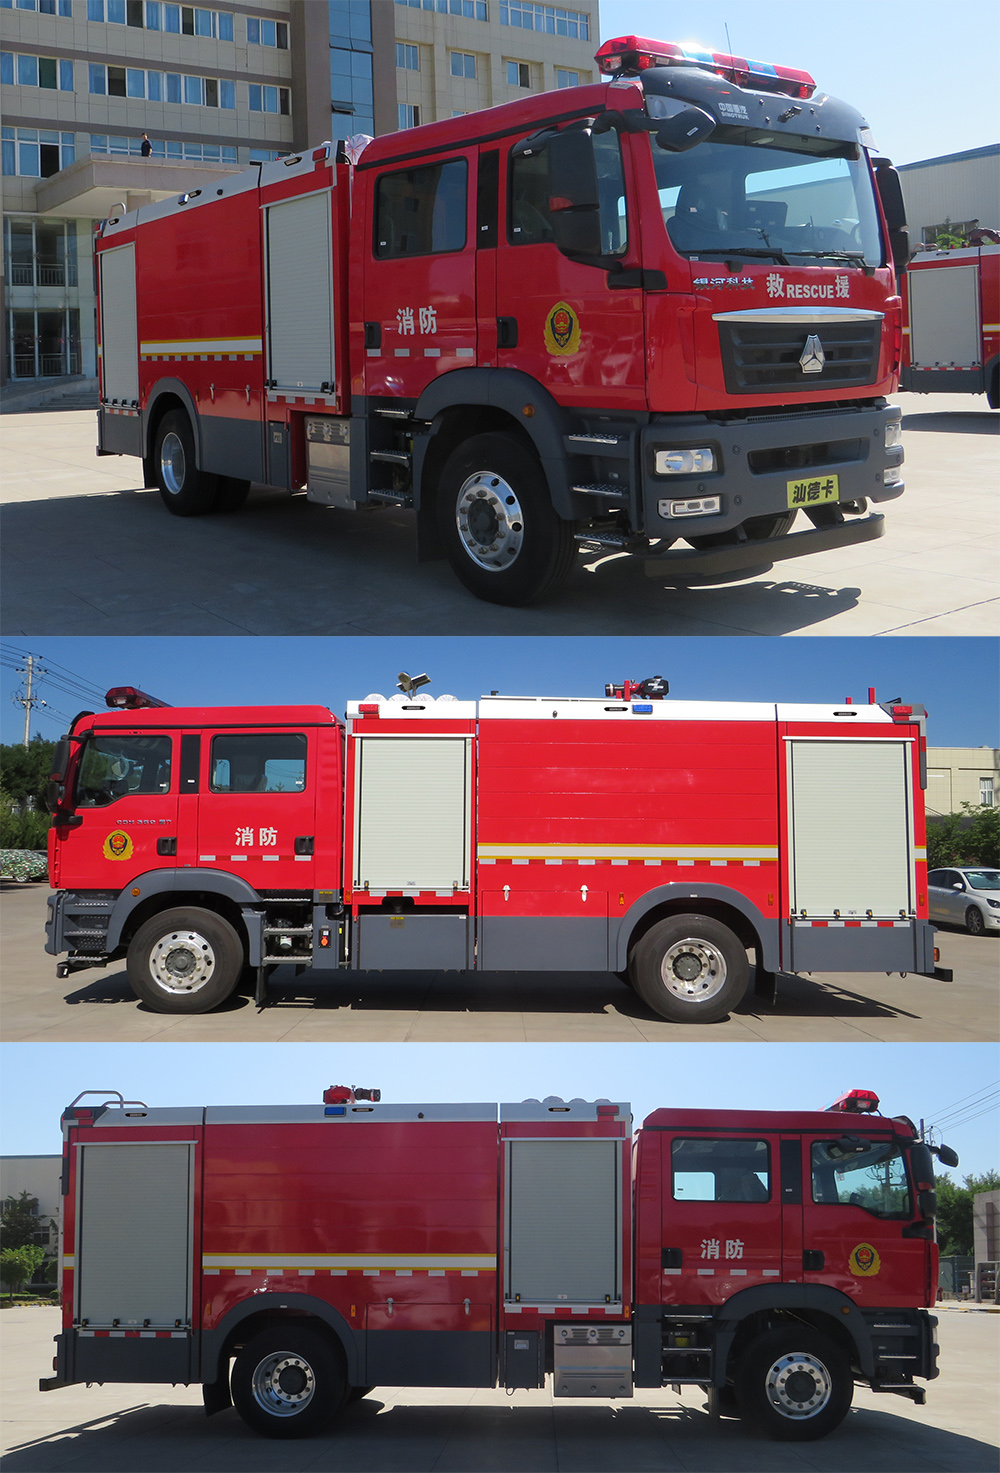 银河牌bx5190gxfsg80/sk6型水罐消防车